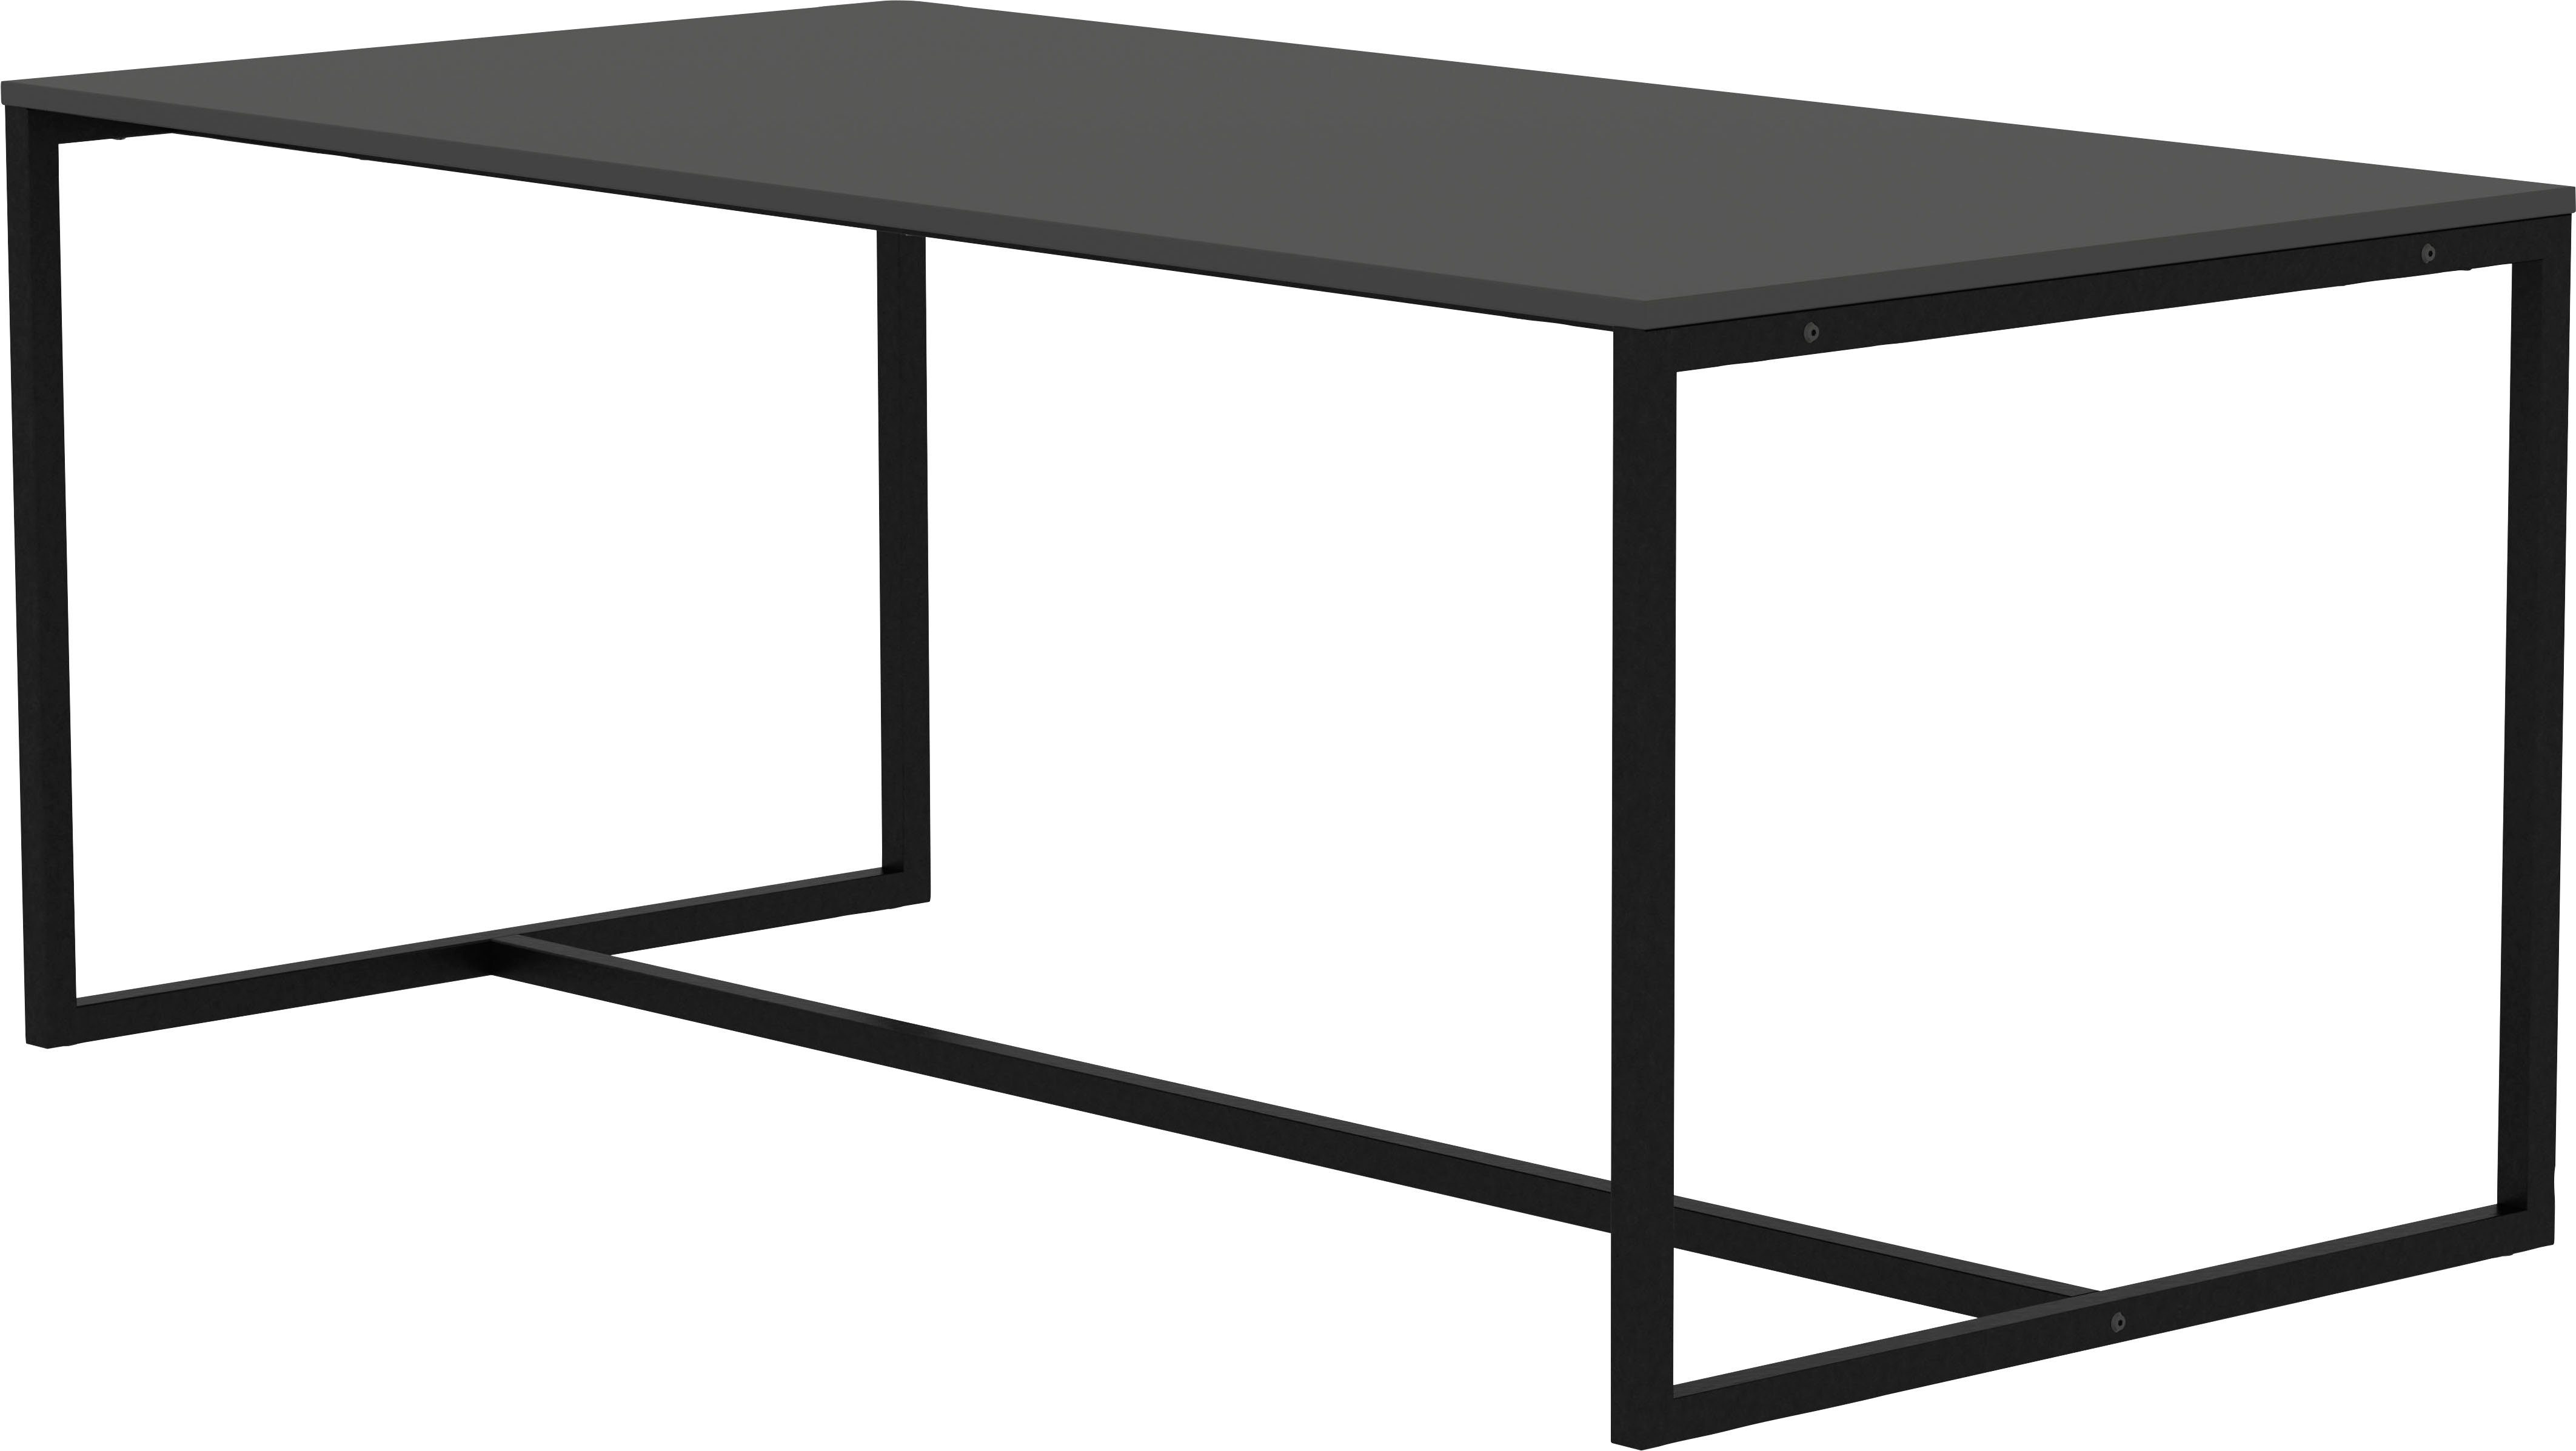 Tenzo schwarz | Design Design shadow LIPP, shadow Esstisch von Tenzo Breite 180 cm schwarz studio,